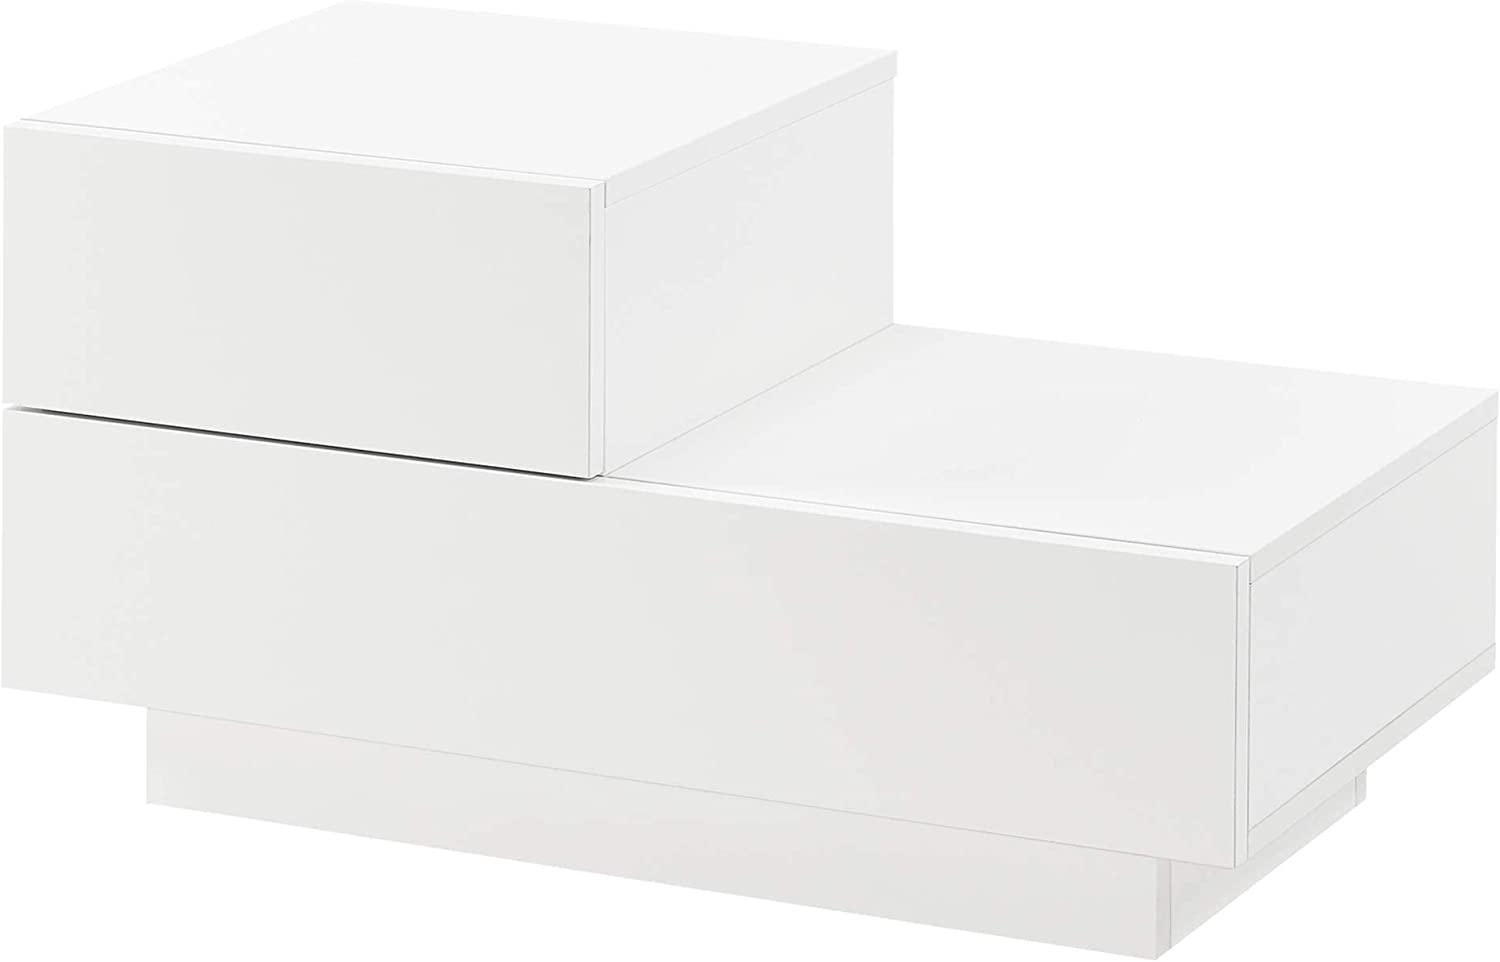 Nachttisch Sebokeng 38x75x35 cm mit Schublade oben links Weiß Hochglanz en. casa Bild 1